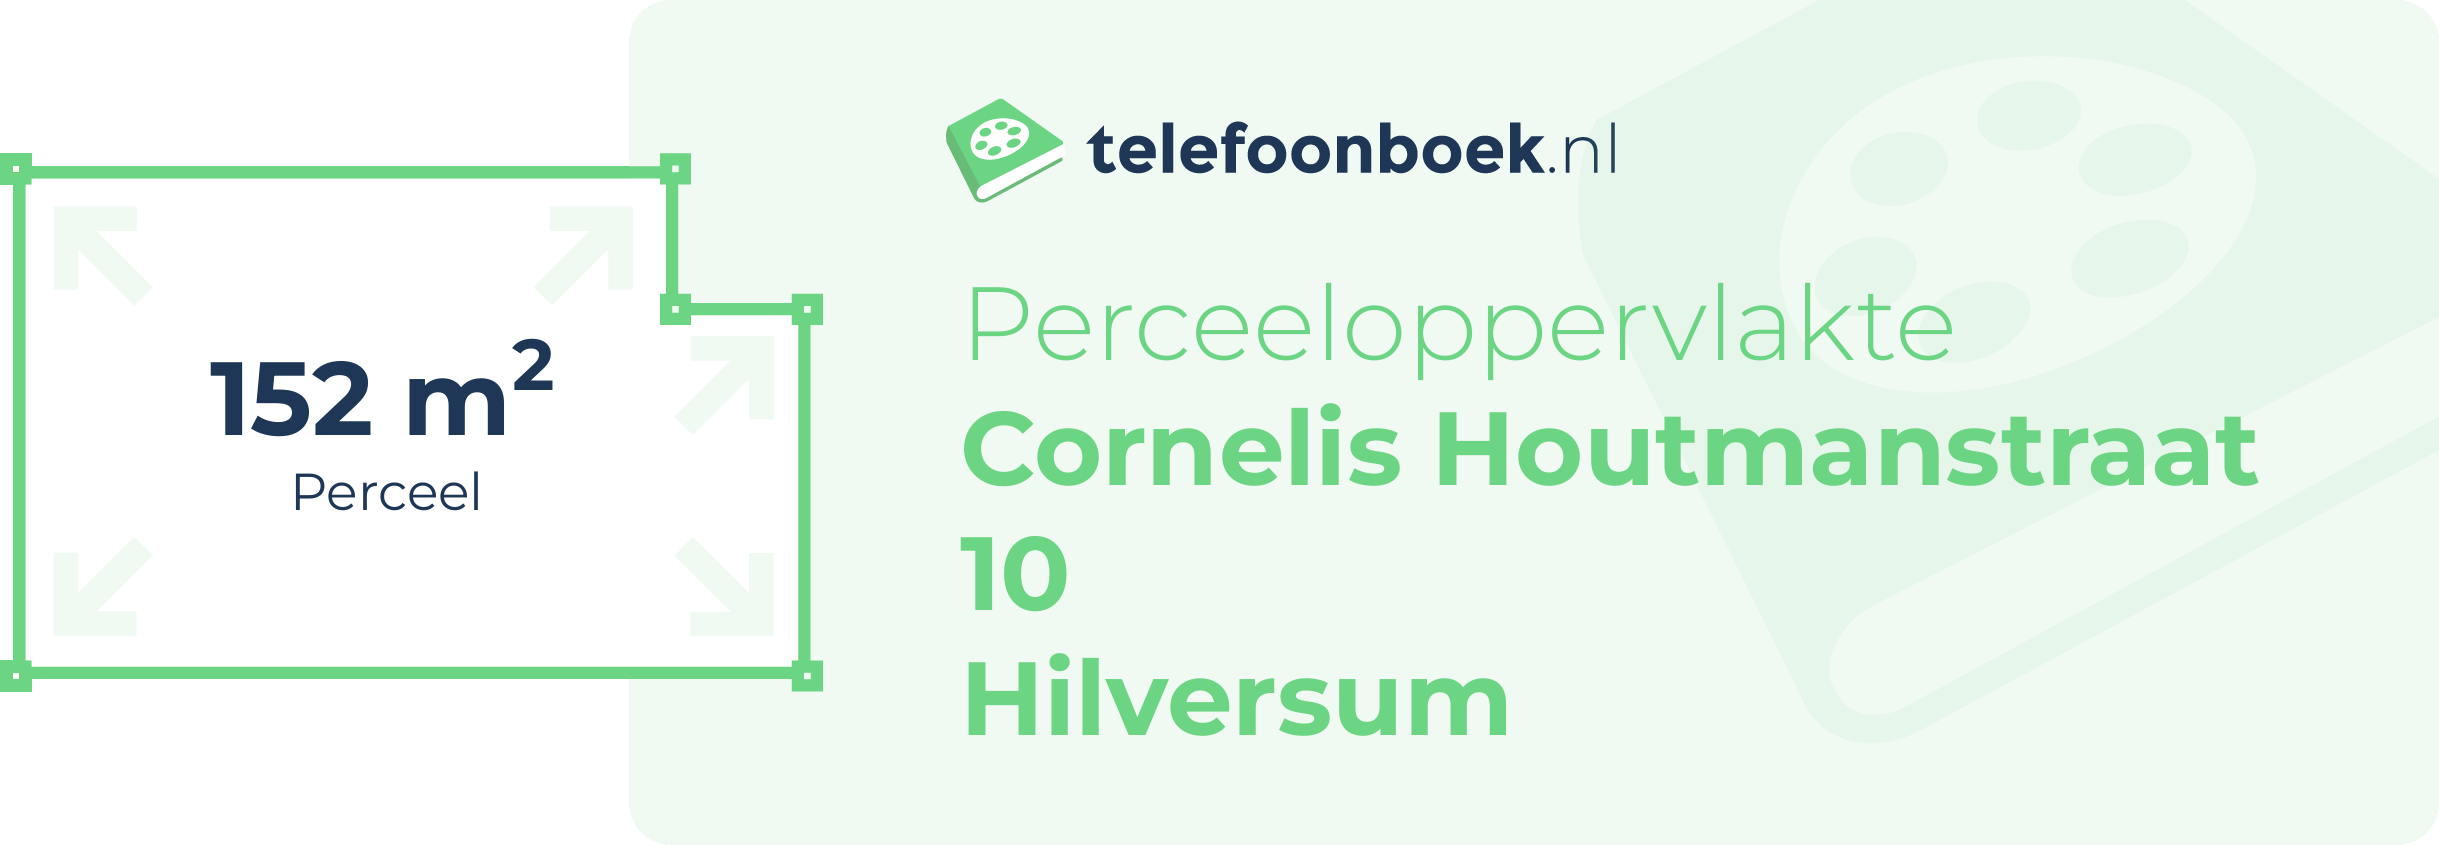 Perceeloppervlakte Cornelis Houtmanstraat 10 Hilversum